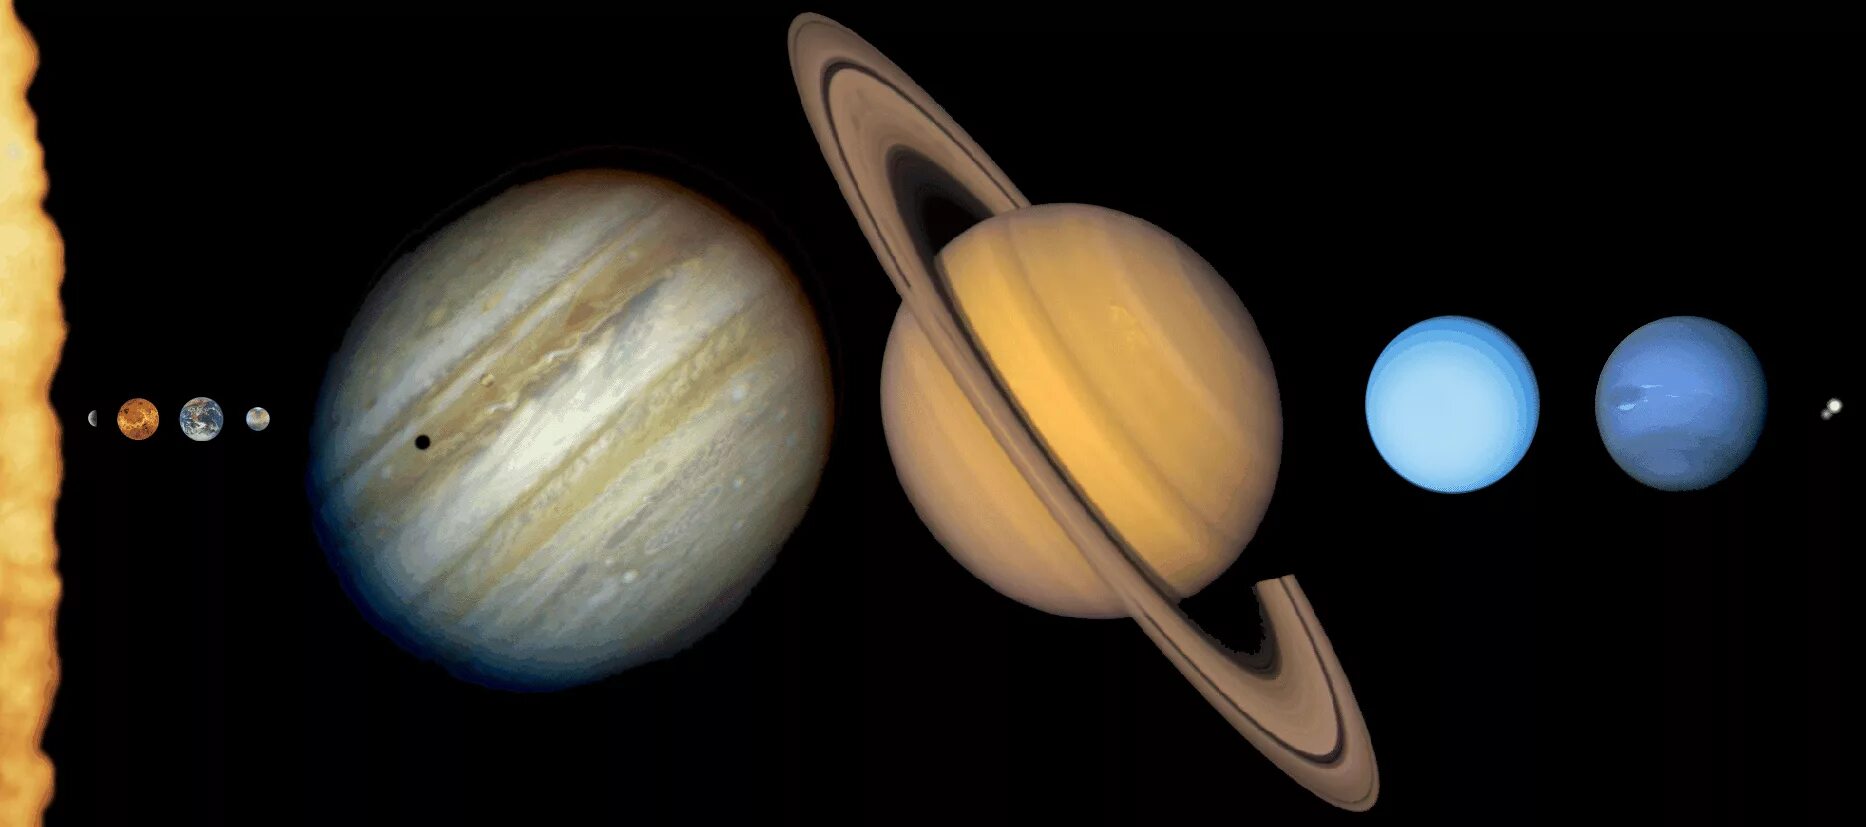 Соединение сатурн плутон. Снимки Сатурна Вояджер. Планеты гиганты Юпитер Уран. Земля Нептун Уран Сатурн Юпитер. Марс Юпитер Сатурн Уран Нептун.